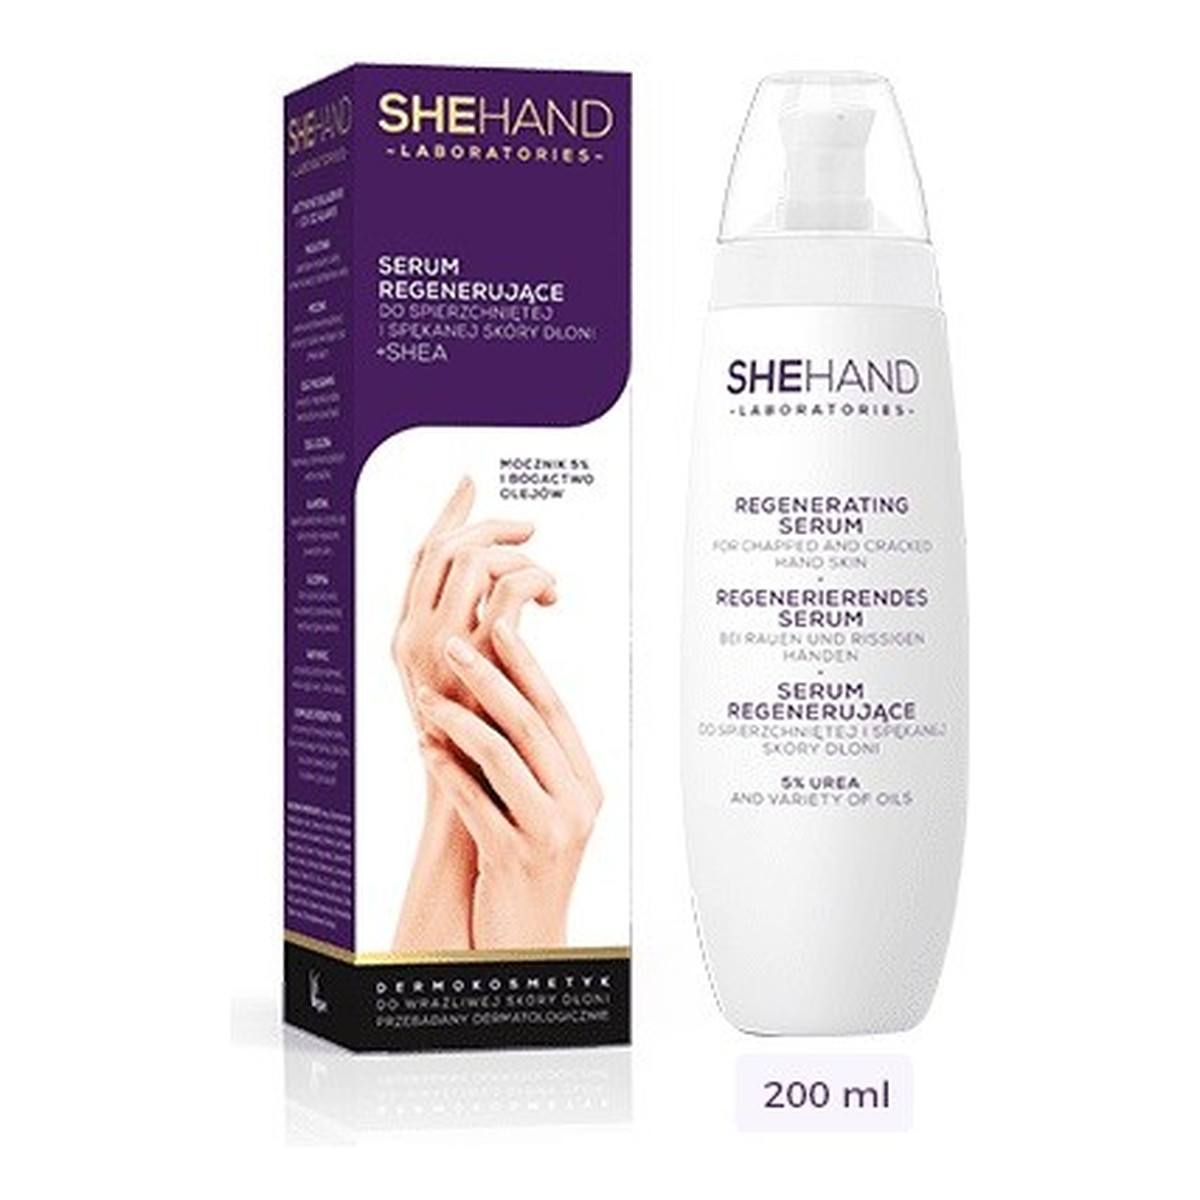 SheFoot SheHand Serum regenerujące do spierzchniętej i spękanej skóry dłoni 200ml